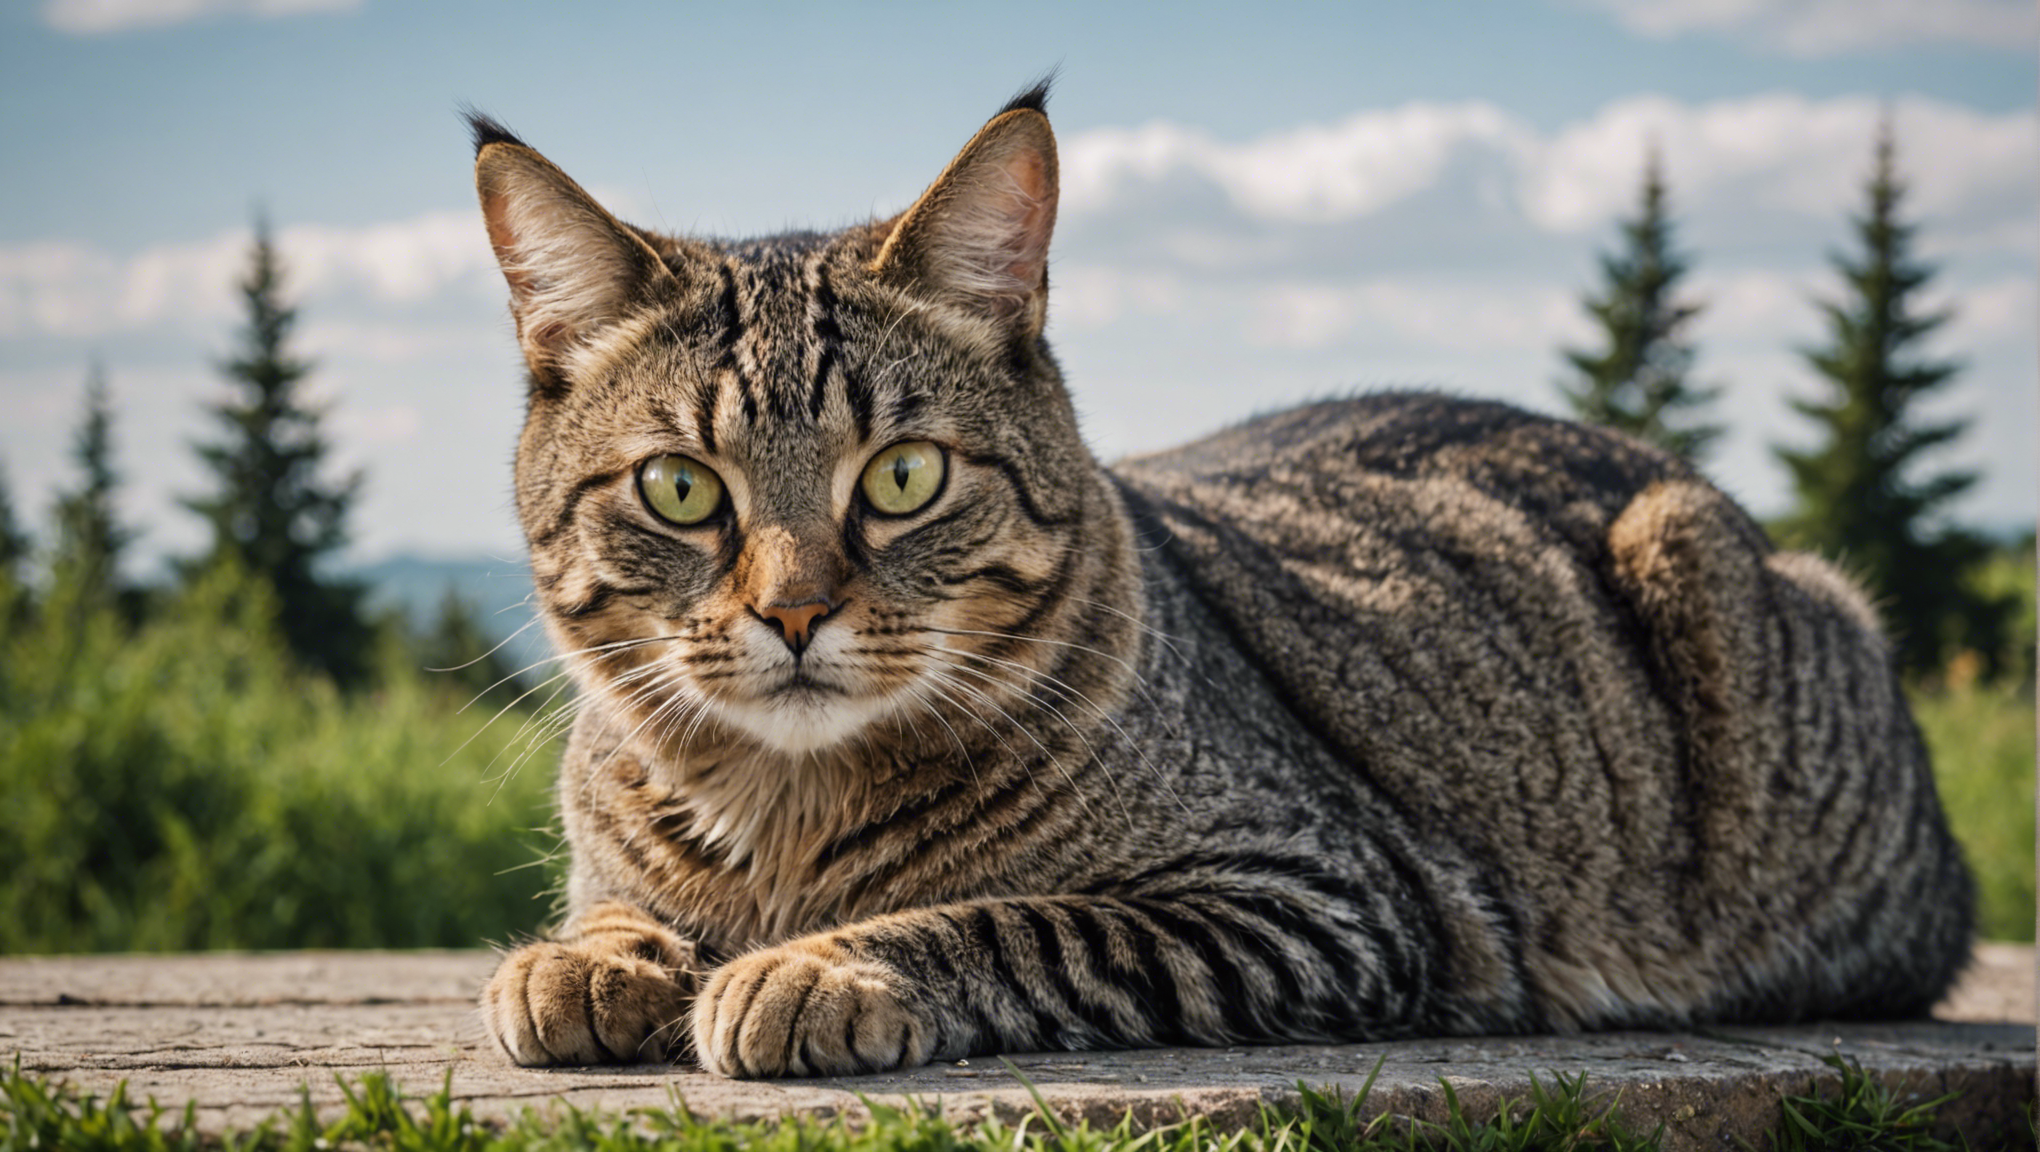 découvrez tout sur l'alpha-cat cbd et ses bienfaits : ses origines, ses effets et comment il peut améliorer votre bien-être.